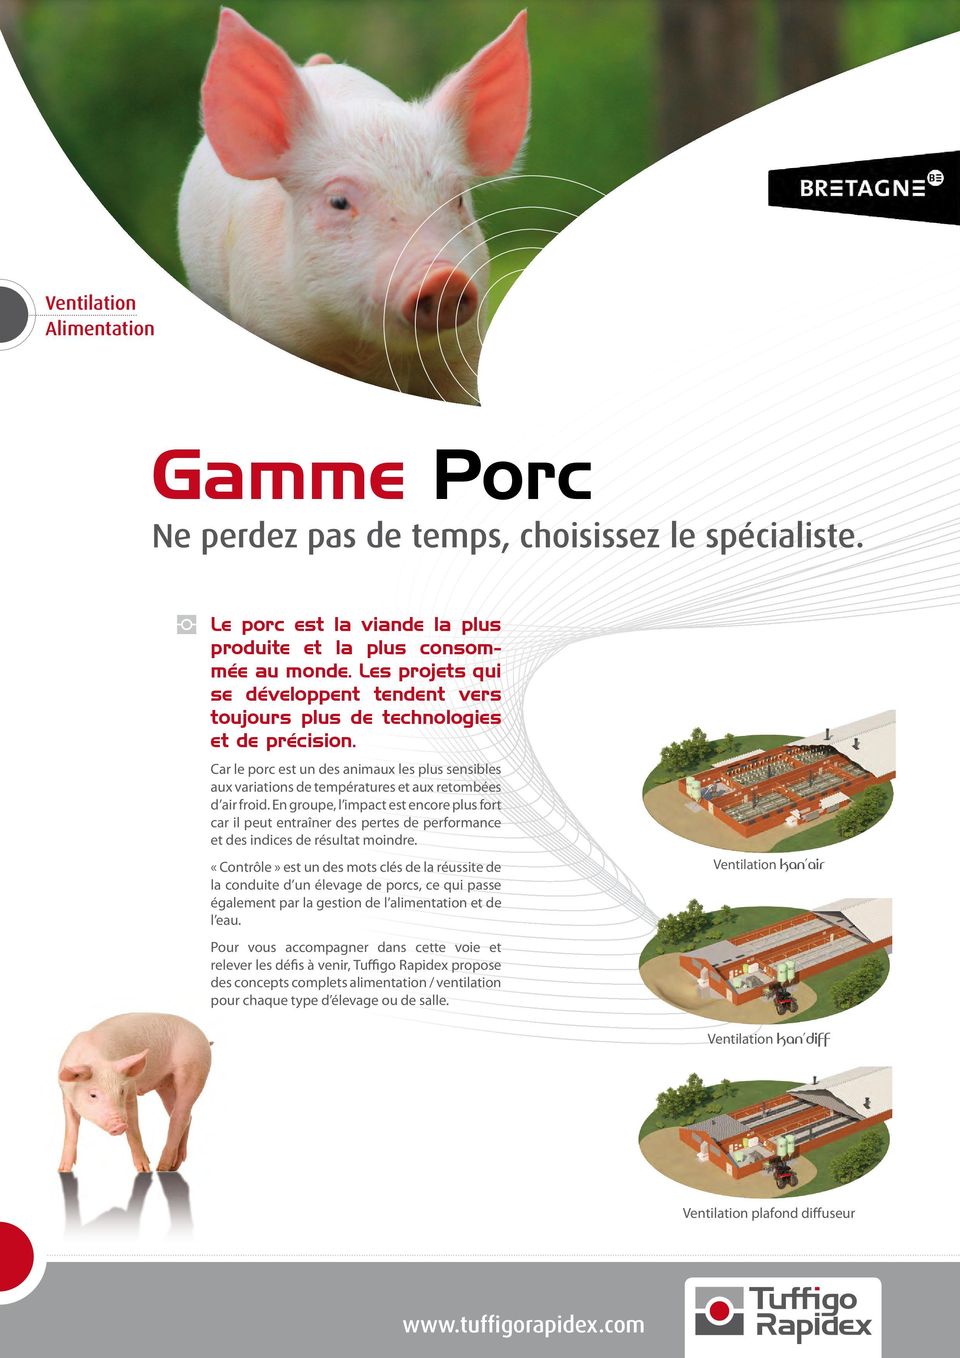 Car le porc est un des animaux les plus sensibles aux variations de températures et aux retombées d air froid.